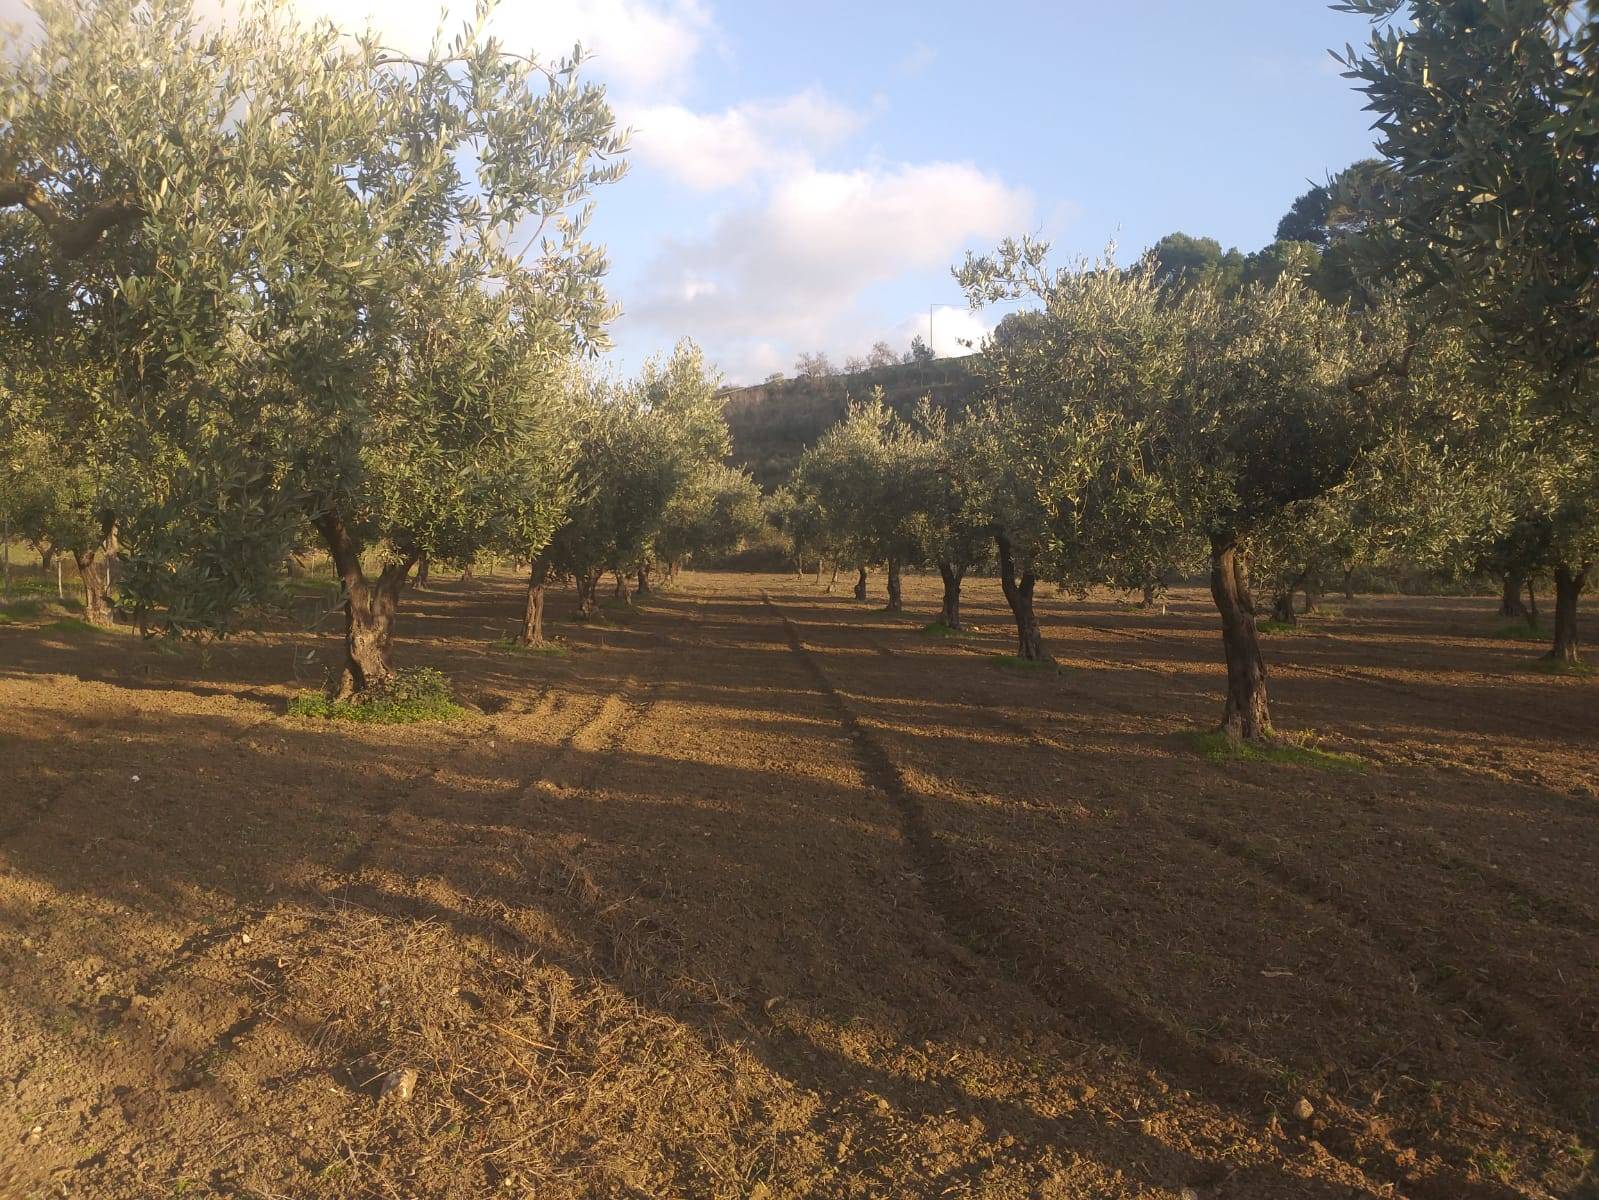 Terreno Agricolo in vendita a Castelvetrano, 9999 locali, zona Località: VerdeAgricolo, prezzo € 25.000 | PortaleAgenzieImmobiliari.it